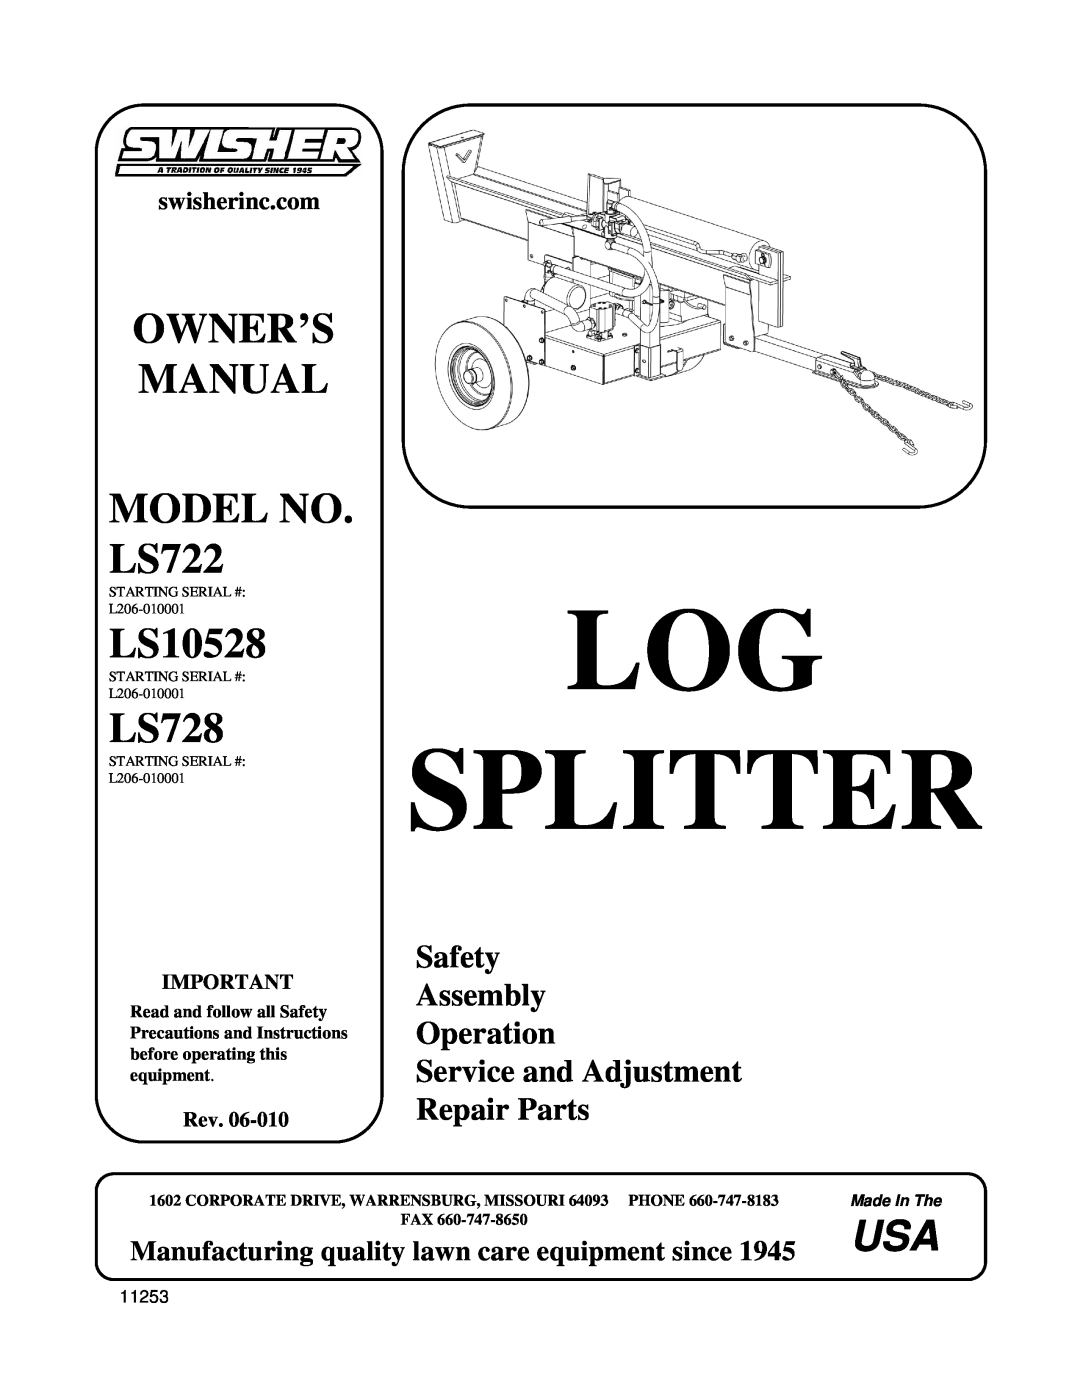 Swisher manual Owner’S Manual, LS10528, LS728, MODELNO. LS722, Log Splitter, RepairParts, swisherinc.com, Rev.06-010 